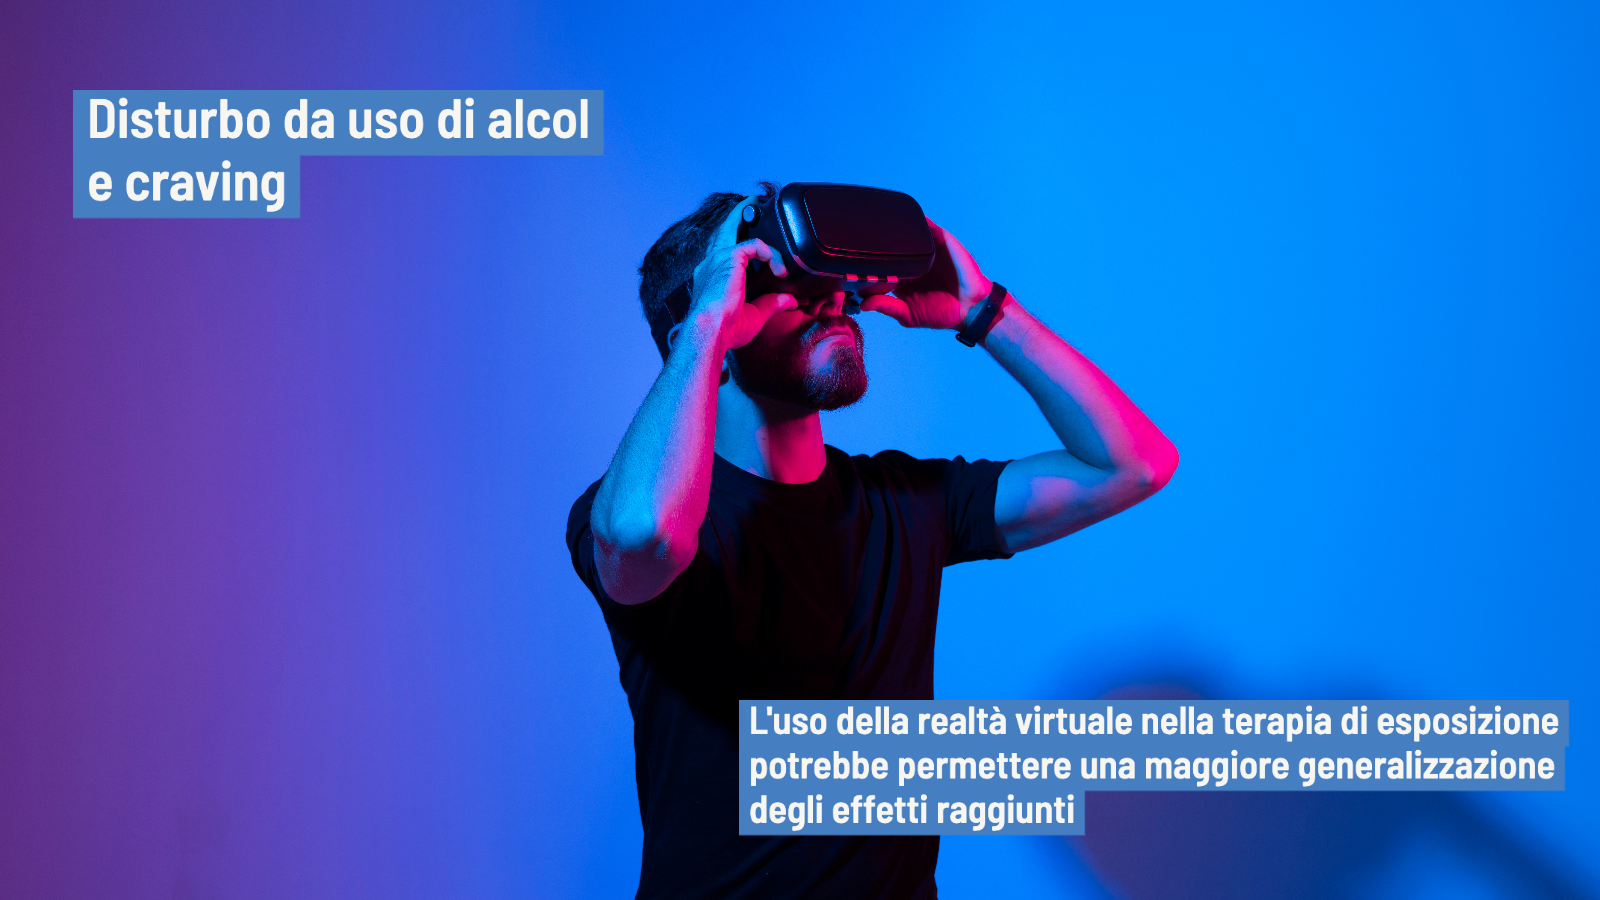 Disturbo da uso di alcol: la realtà virtuale per valutazione e trattamento